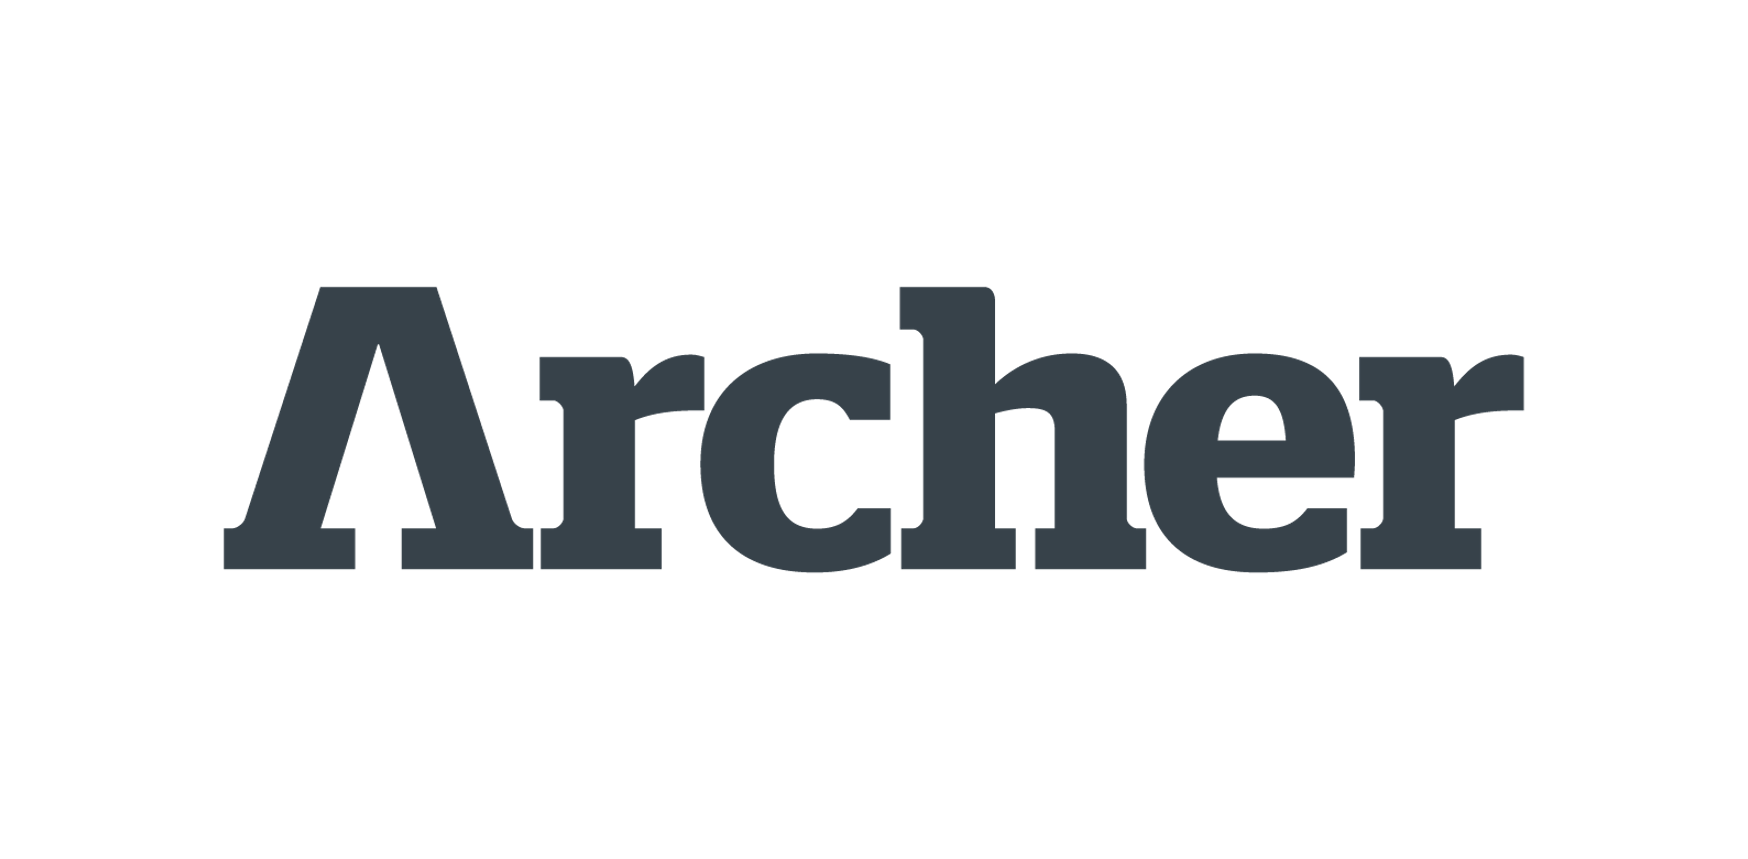 Archer Engineering